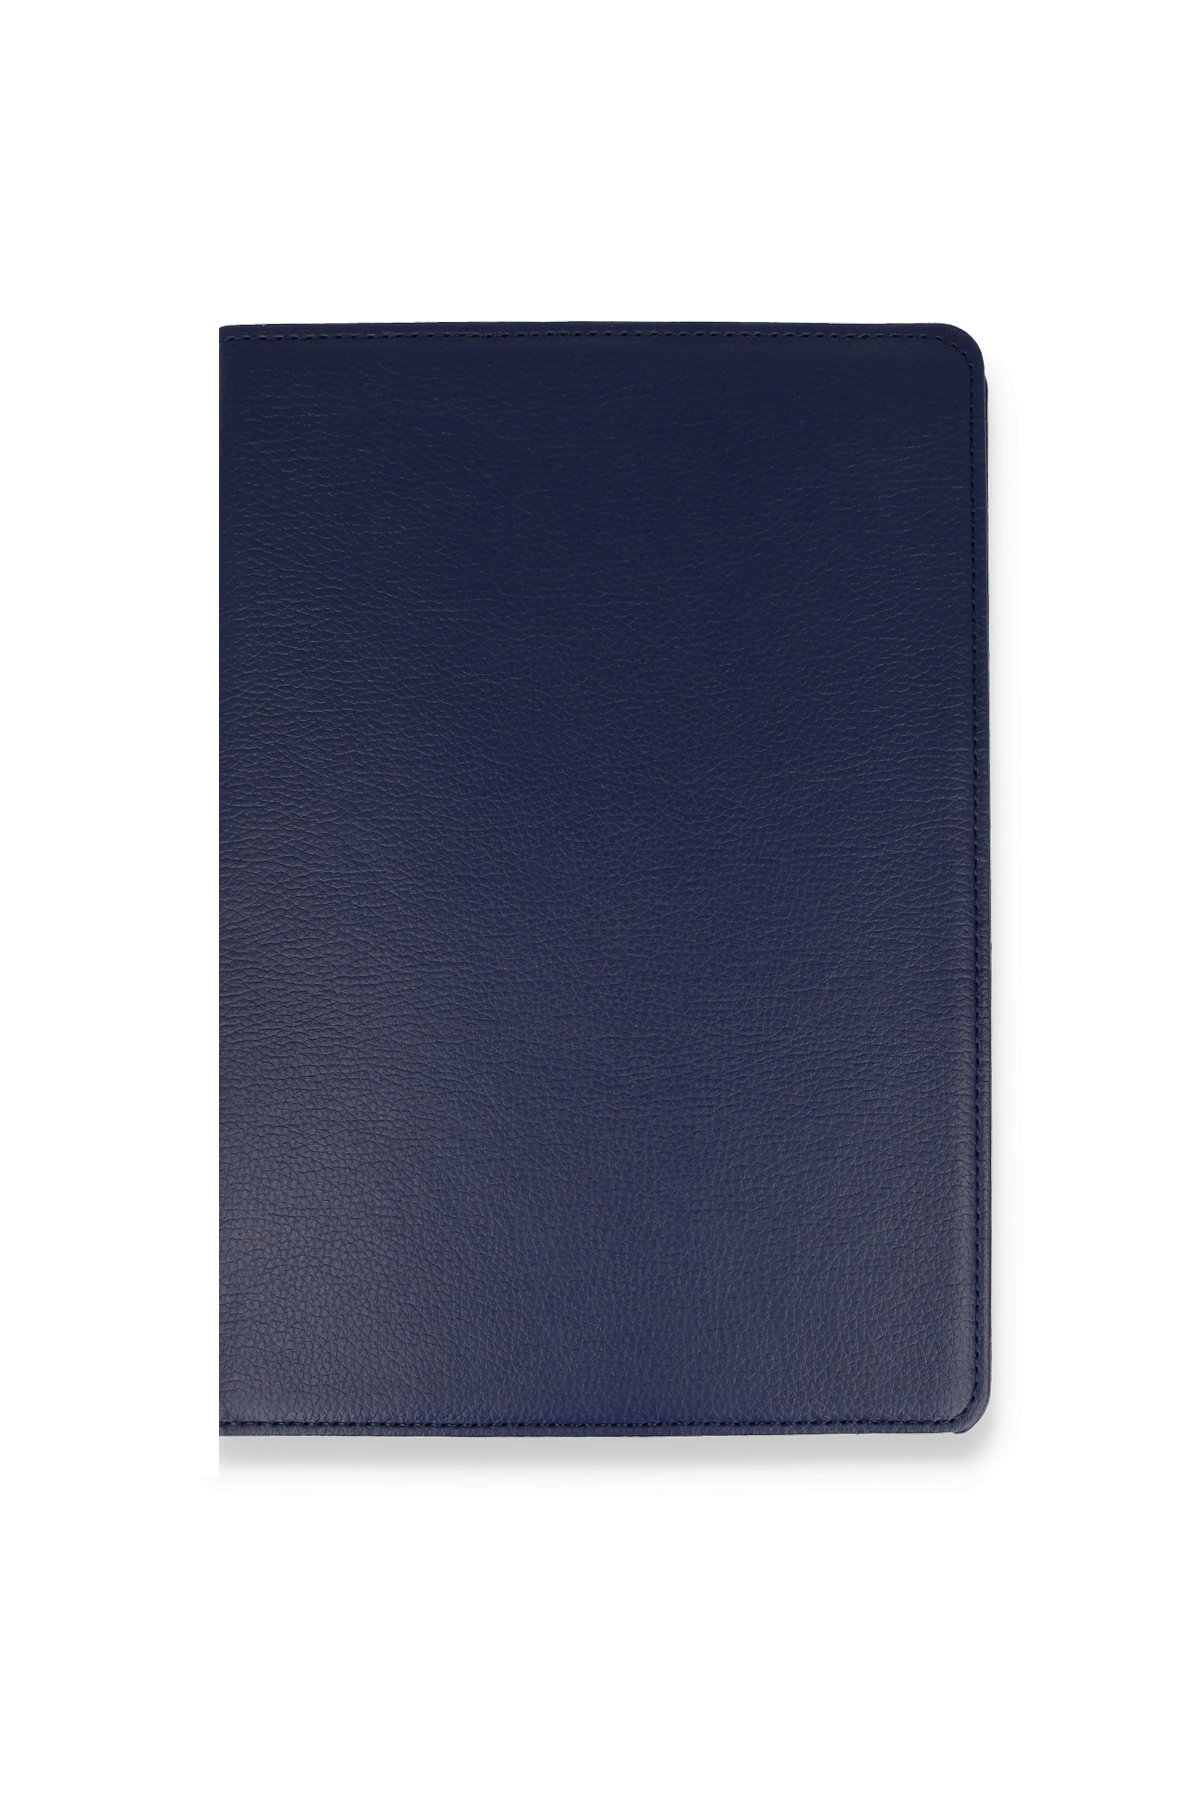 Newface iPad 2 9.7 Kılıf Like Stantlı Tablet Silikon - Siyah